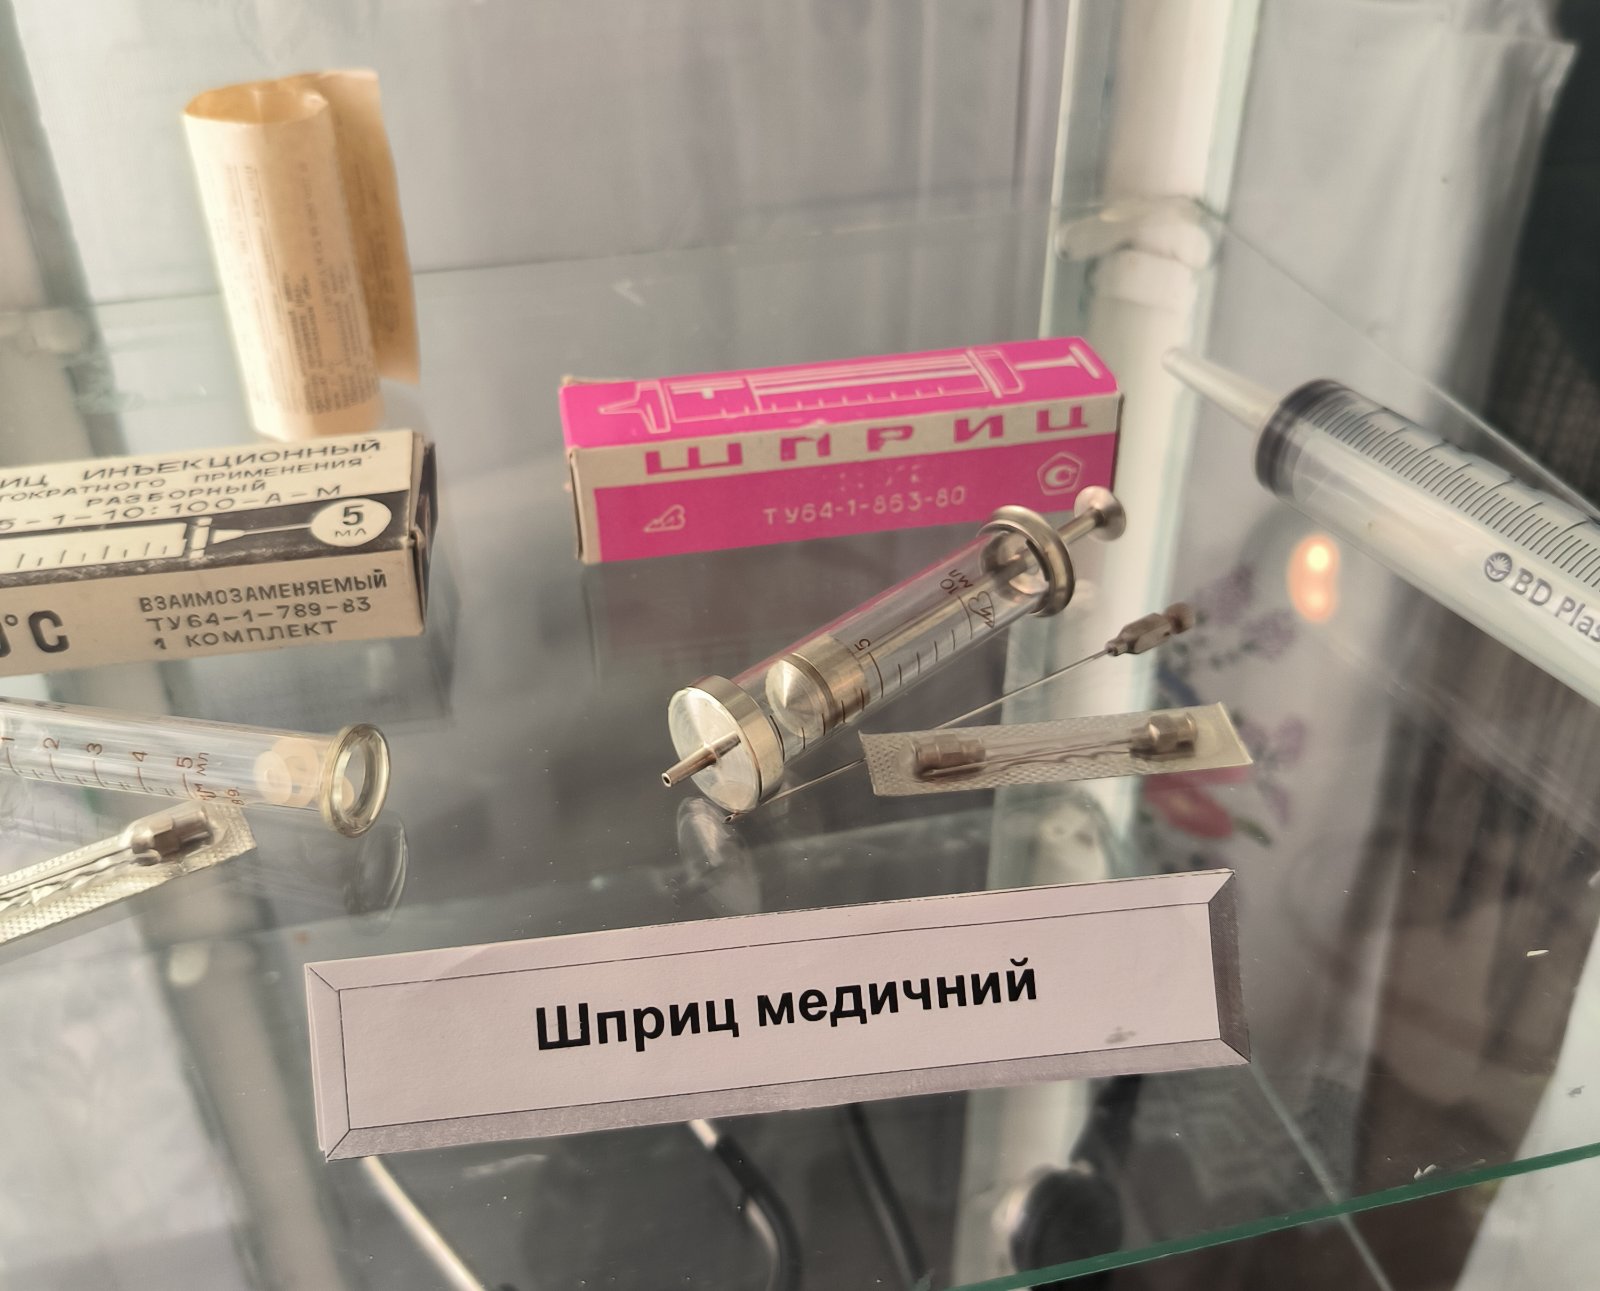 Болградський історико-етнографічний музей отримав цікаві медичні експонати з минулого століття